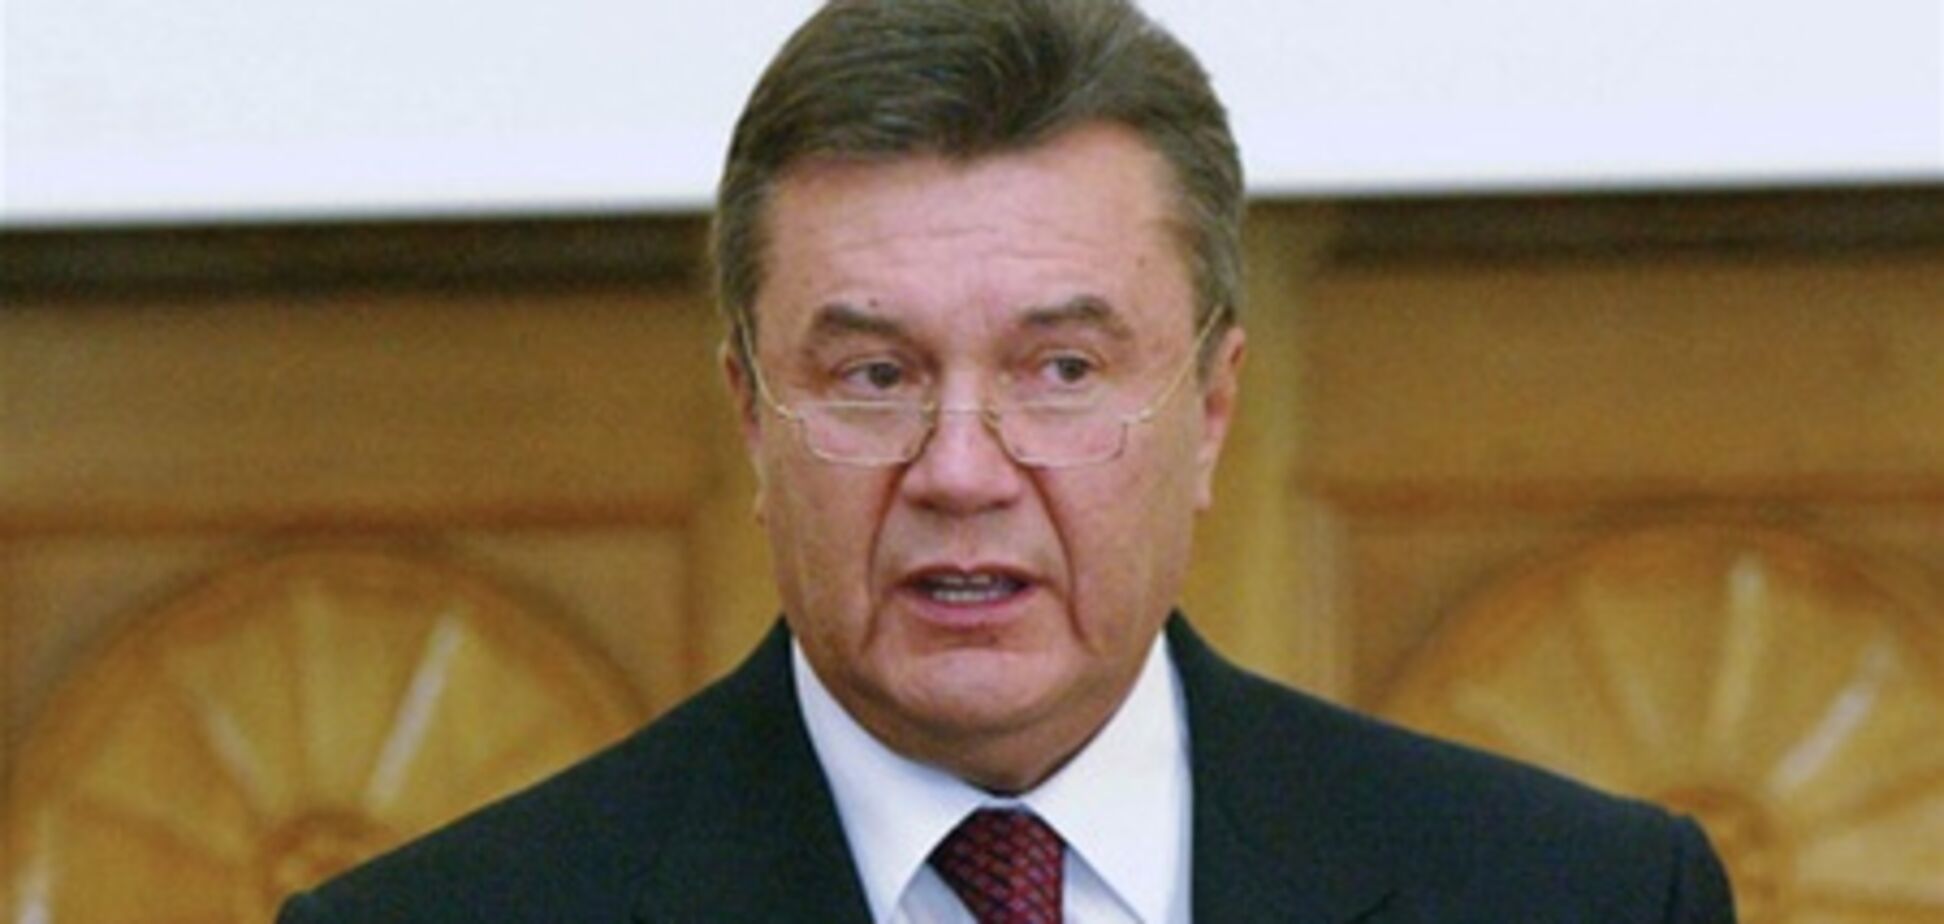 Ми працюємо над зниженням цін на ліки - Янукович